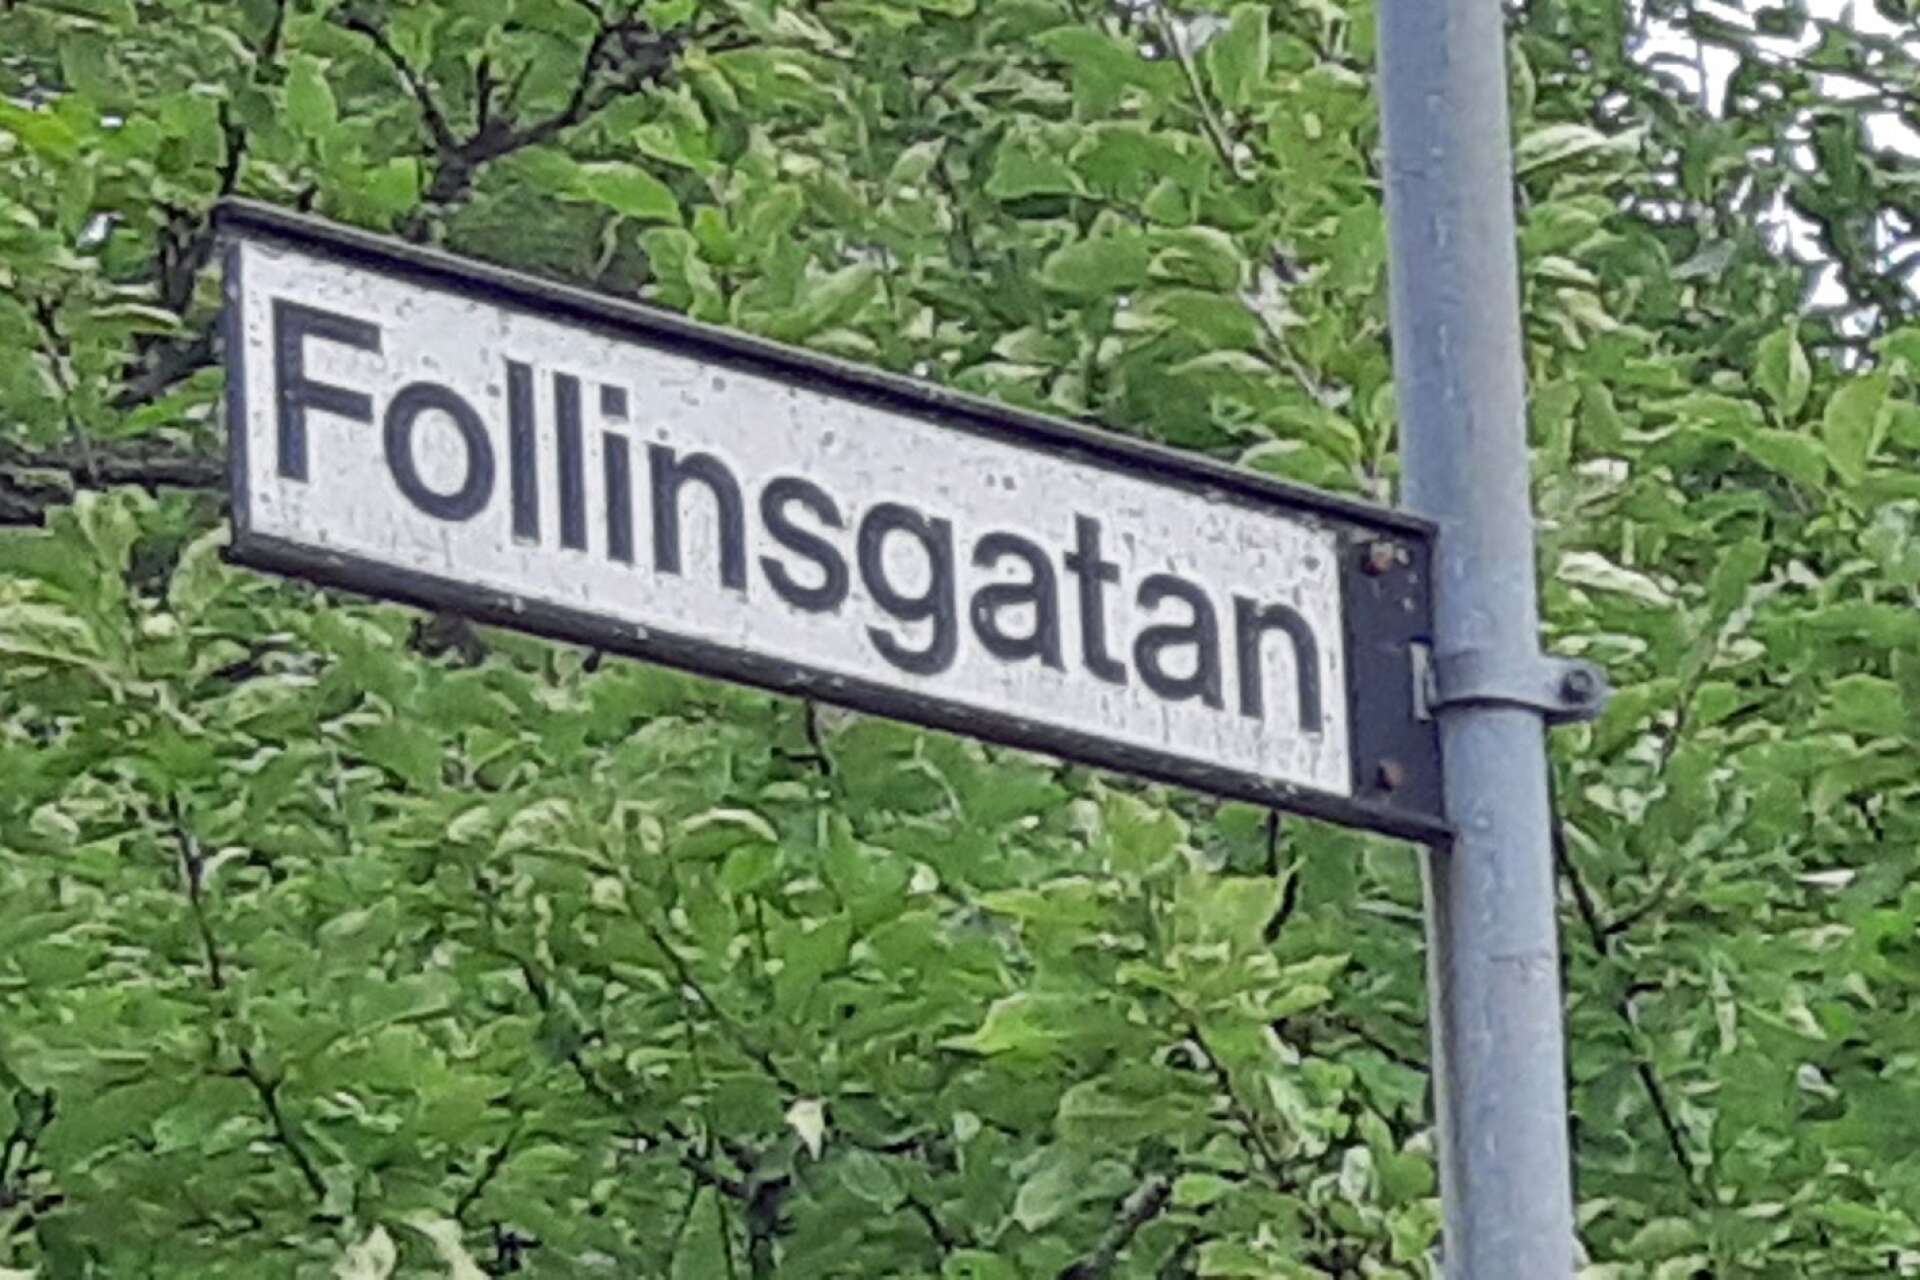 Gatunamnet skall hedra en av Billeruds grundare, men något blev fel när gatunamnet bestämdes. Follinsgatan blev felstavad. Namnet var Folin och gatan skulle förstås ha döpts till Folinsgatan.